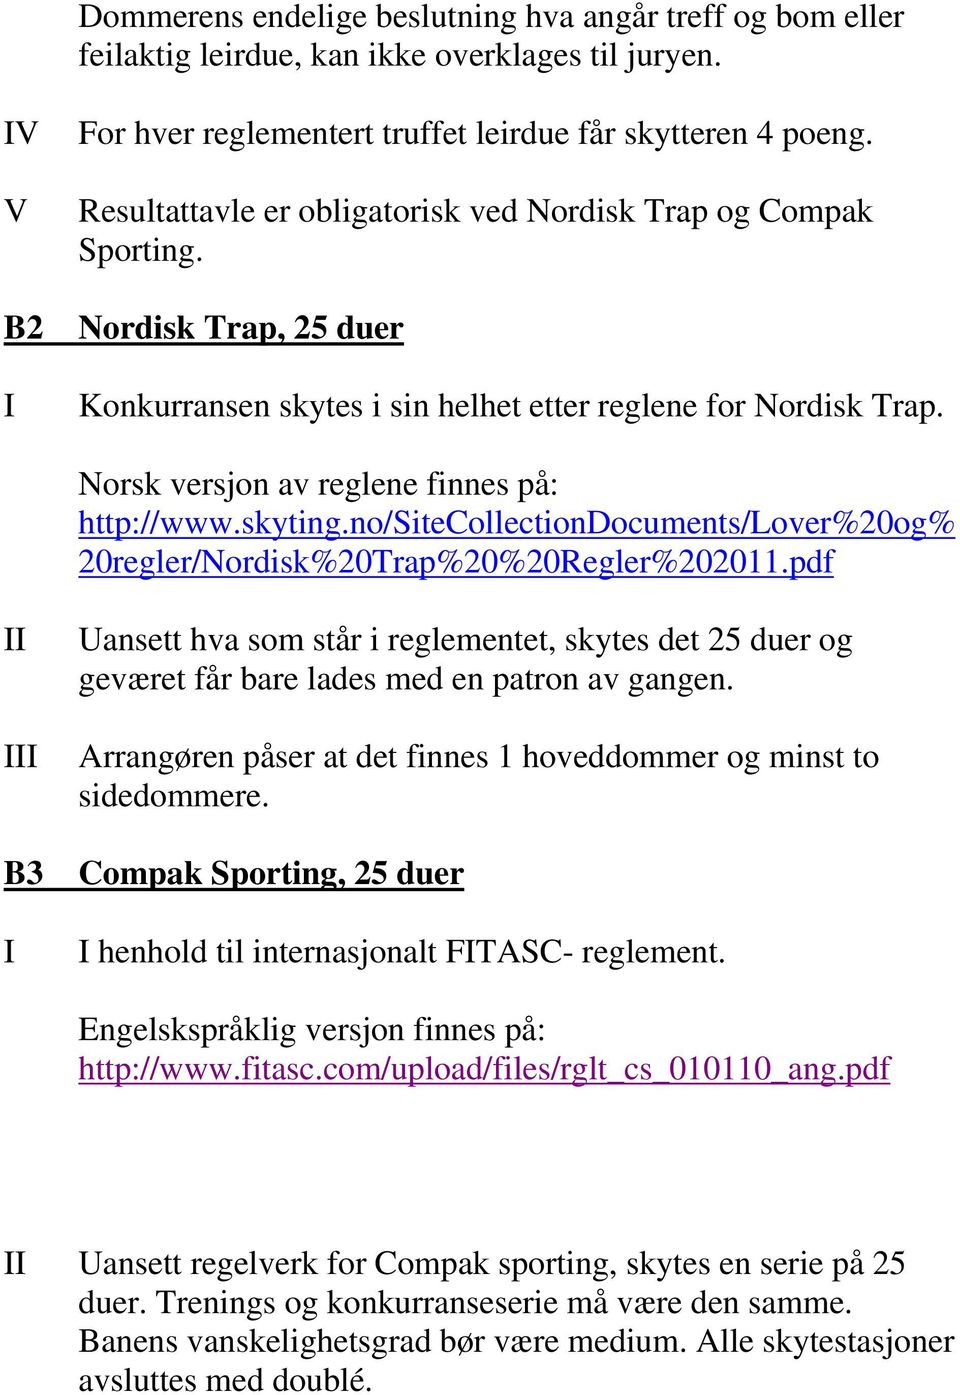 Norsk versjon av reglene finnes på: http://www.skyting.no/sitecollectiondocuments/lover%20og% 20regler/Nordisk%20Trap%20%20Regler%202011.